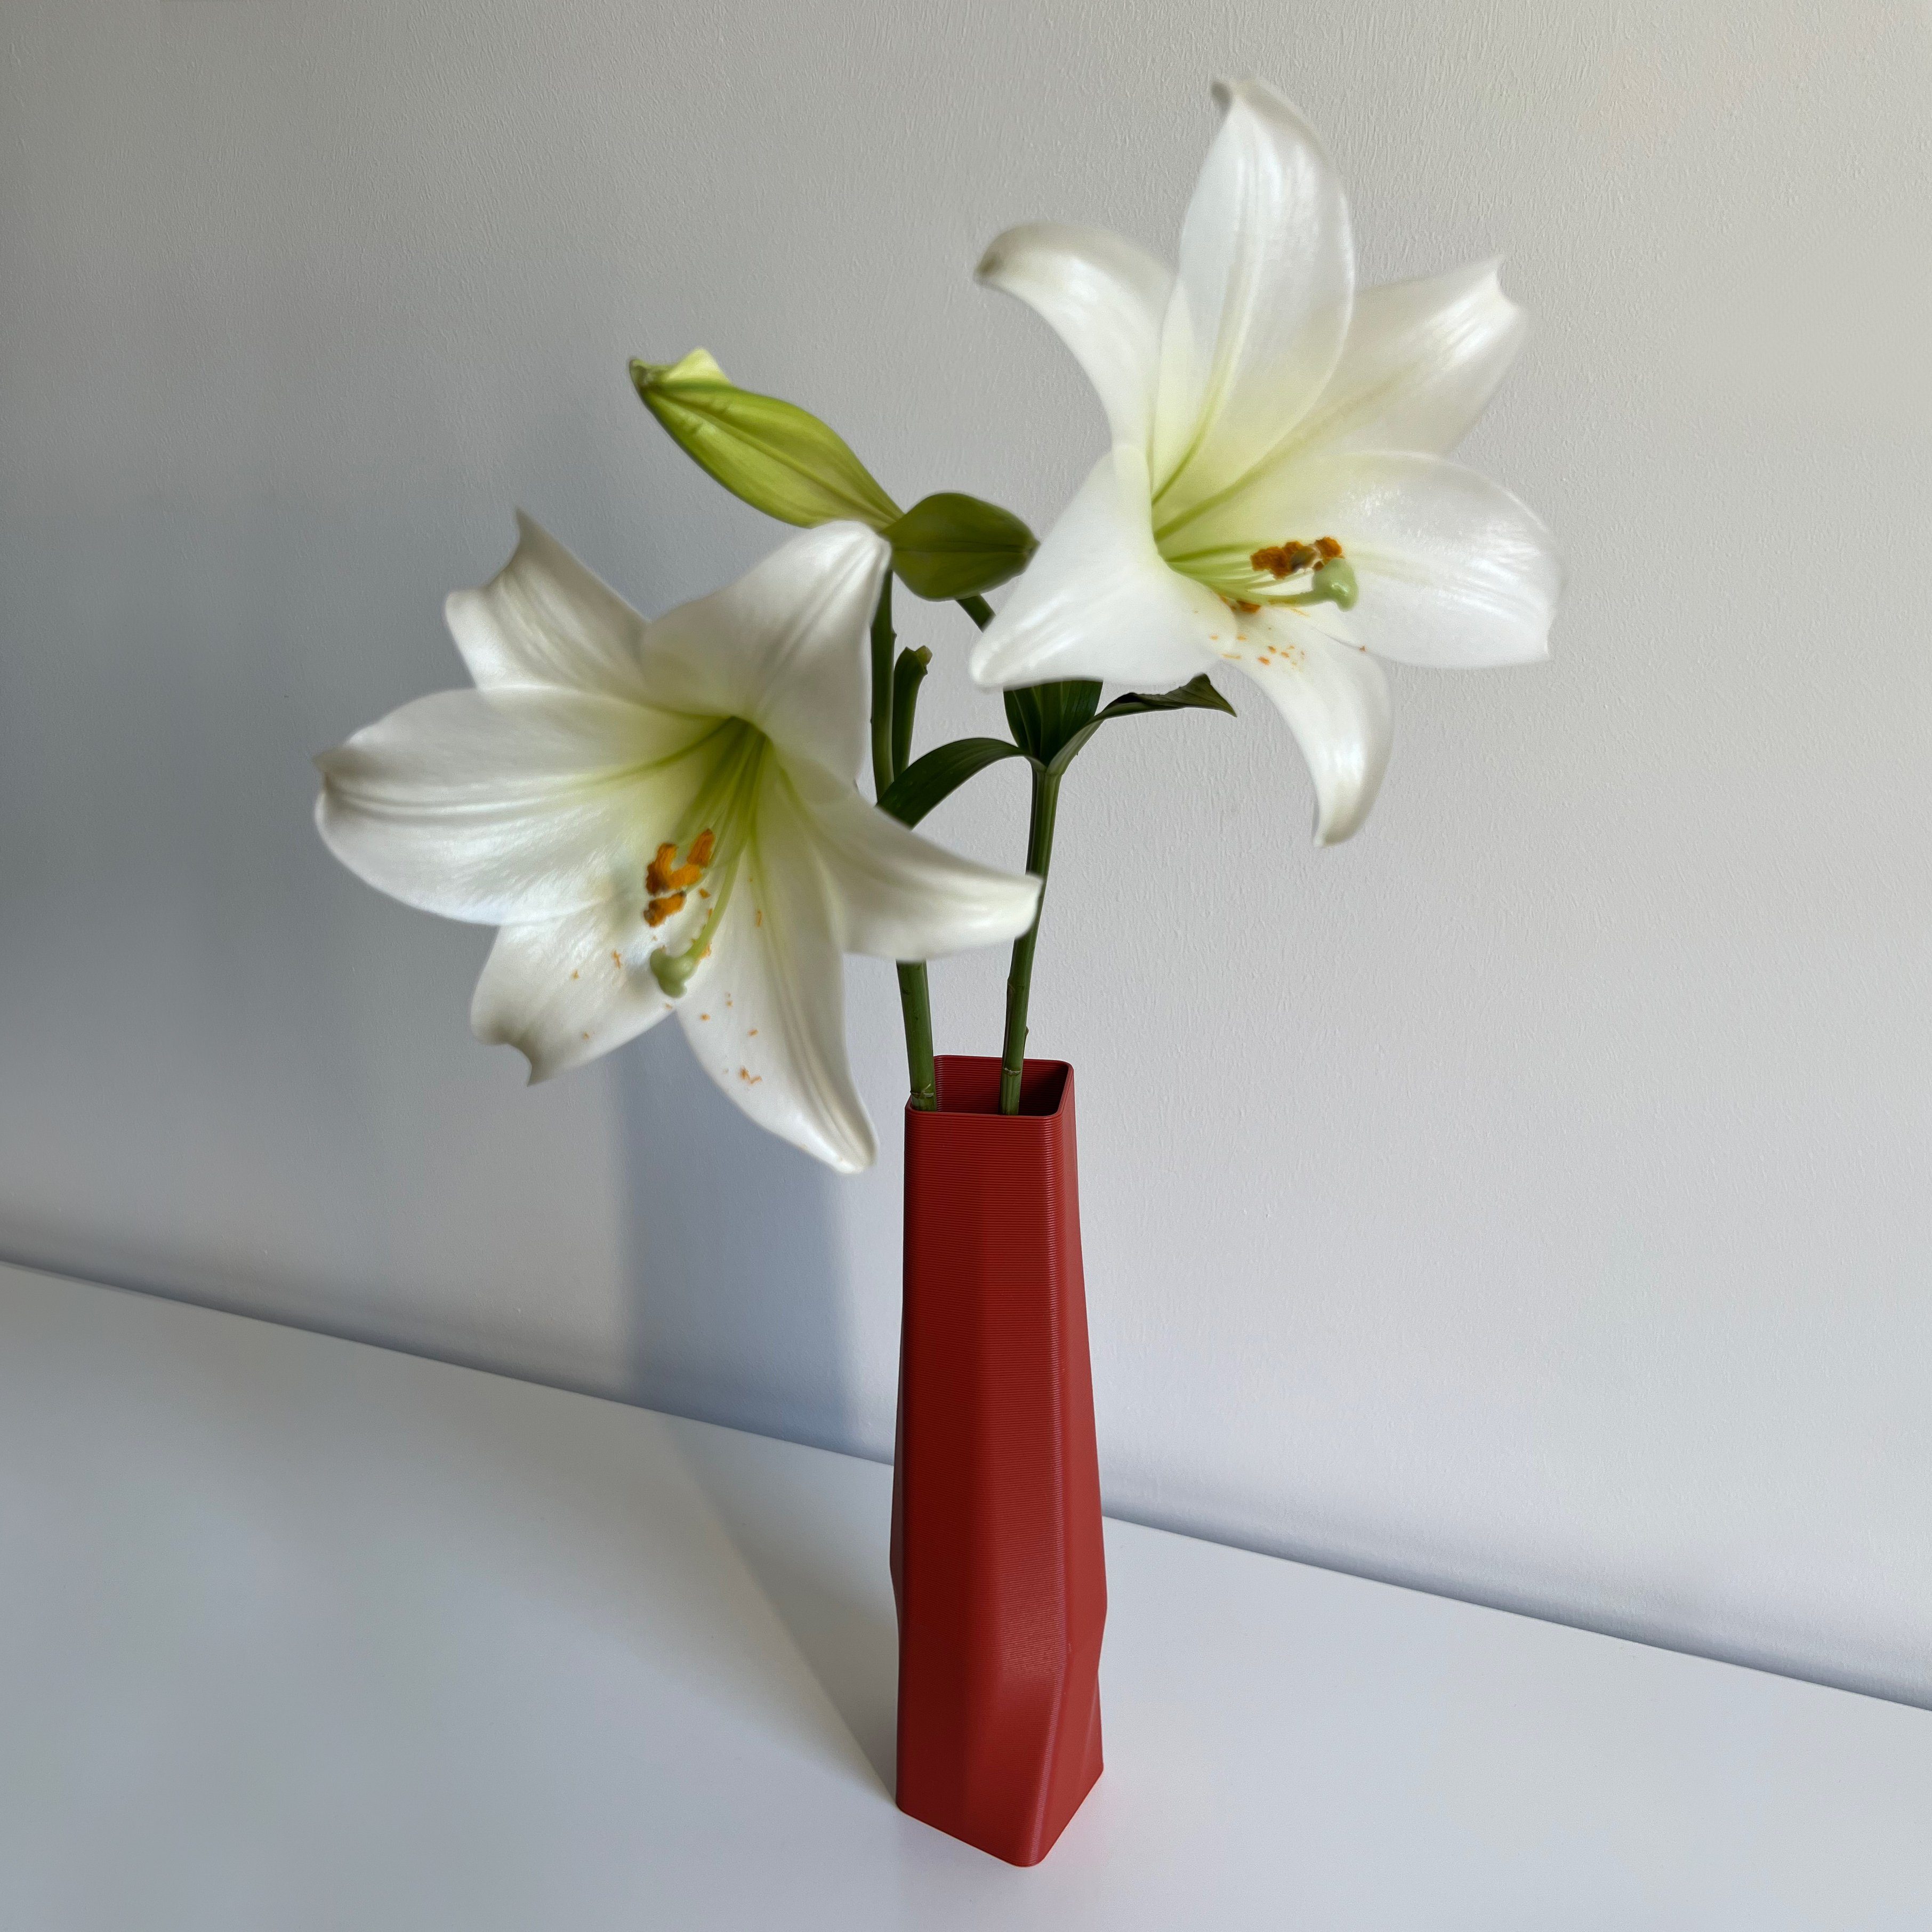 Shapes - Decorations Terracotta Leichte Dekovase (Rillung) 3D des Materials vase (basic), (rot) square Farben, (Einzelmodell, - innerhalb the Struktur Vase), 1 100% viele Wasserdicht; Vasen, 3D-Druck